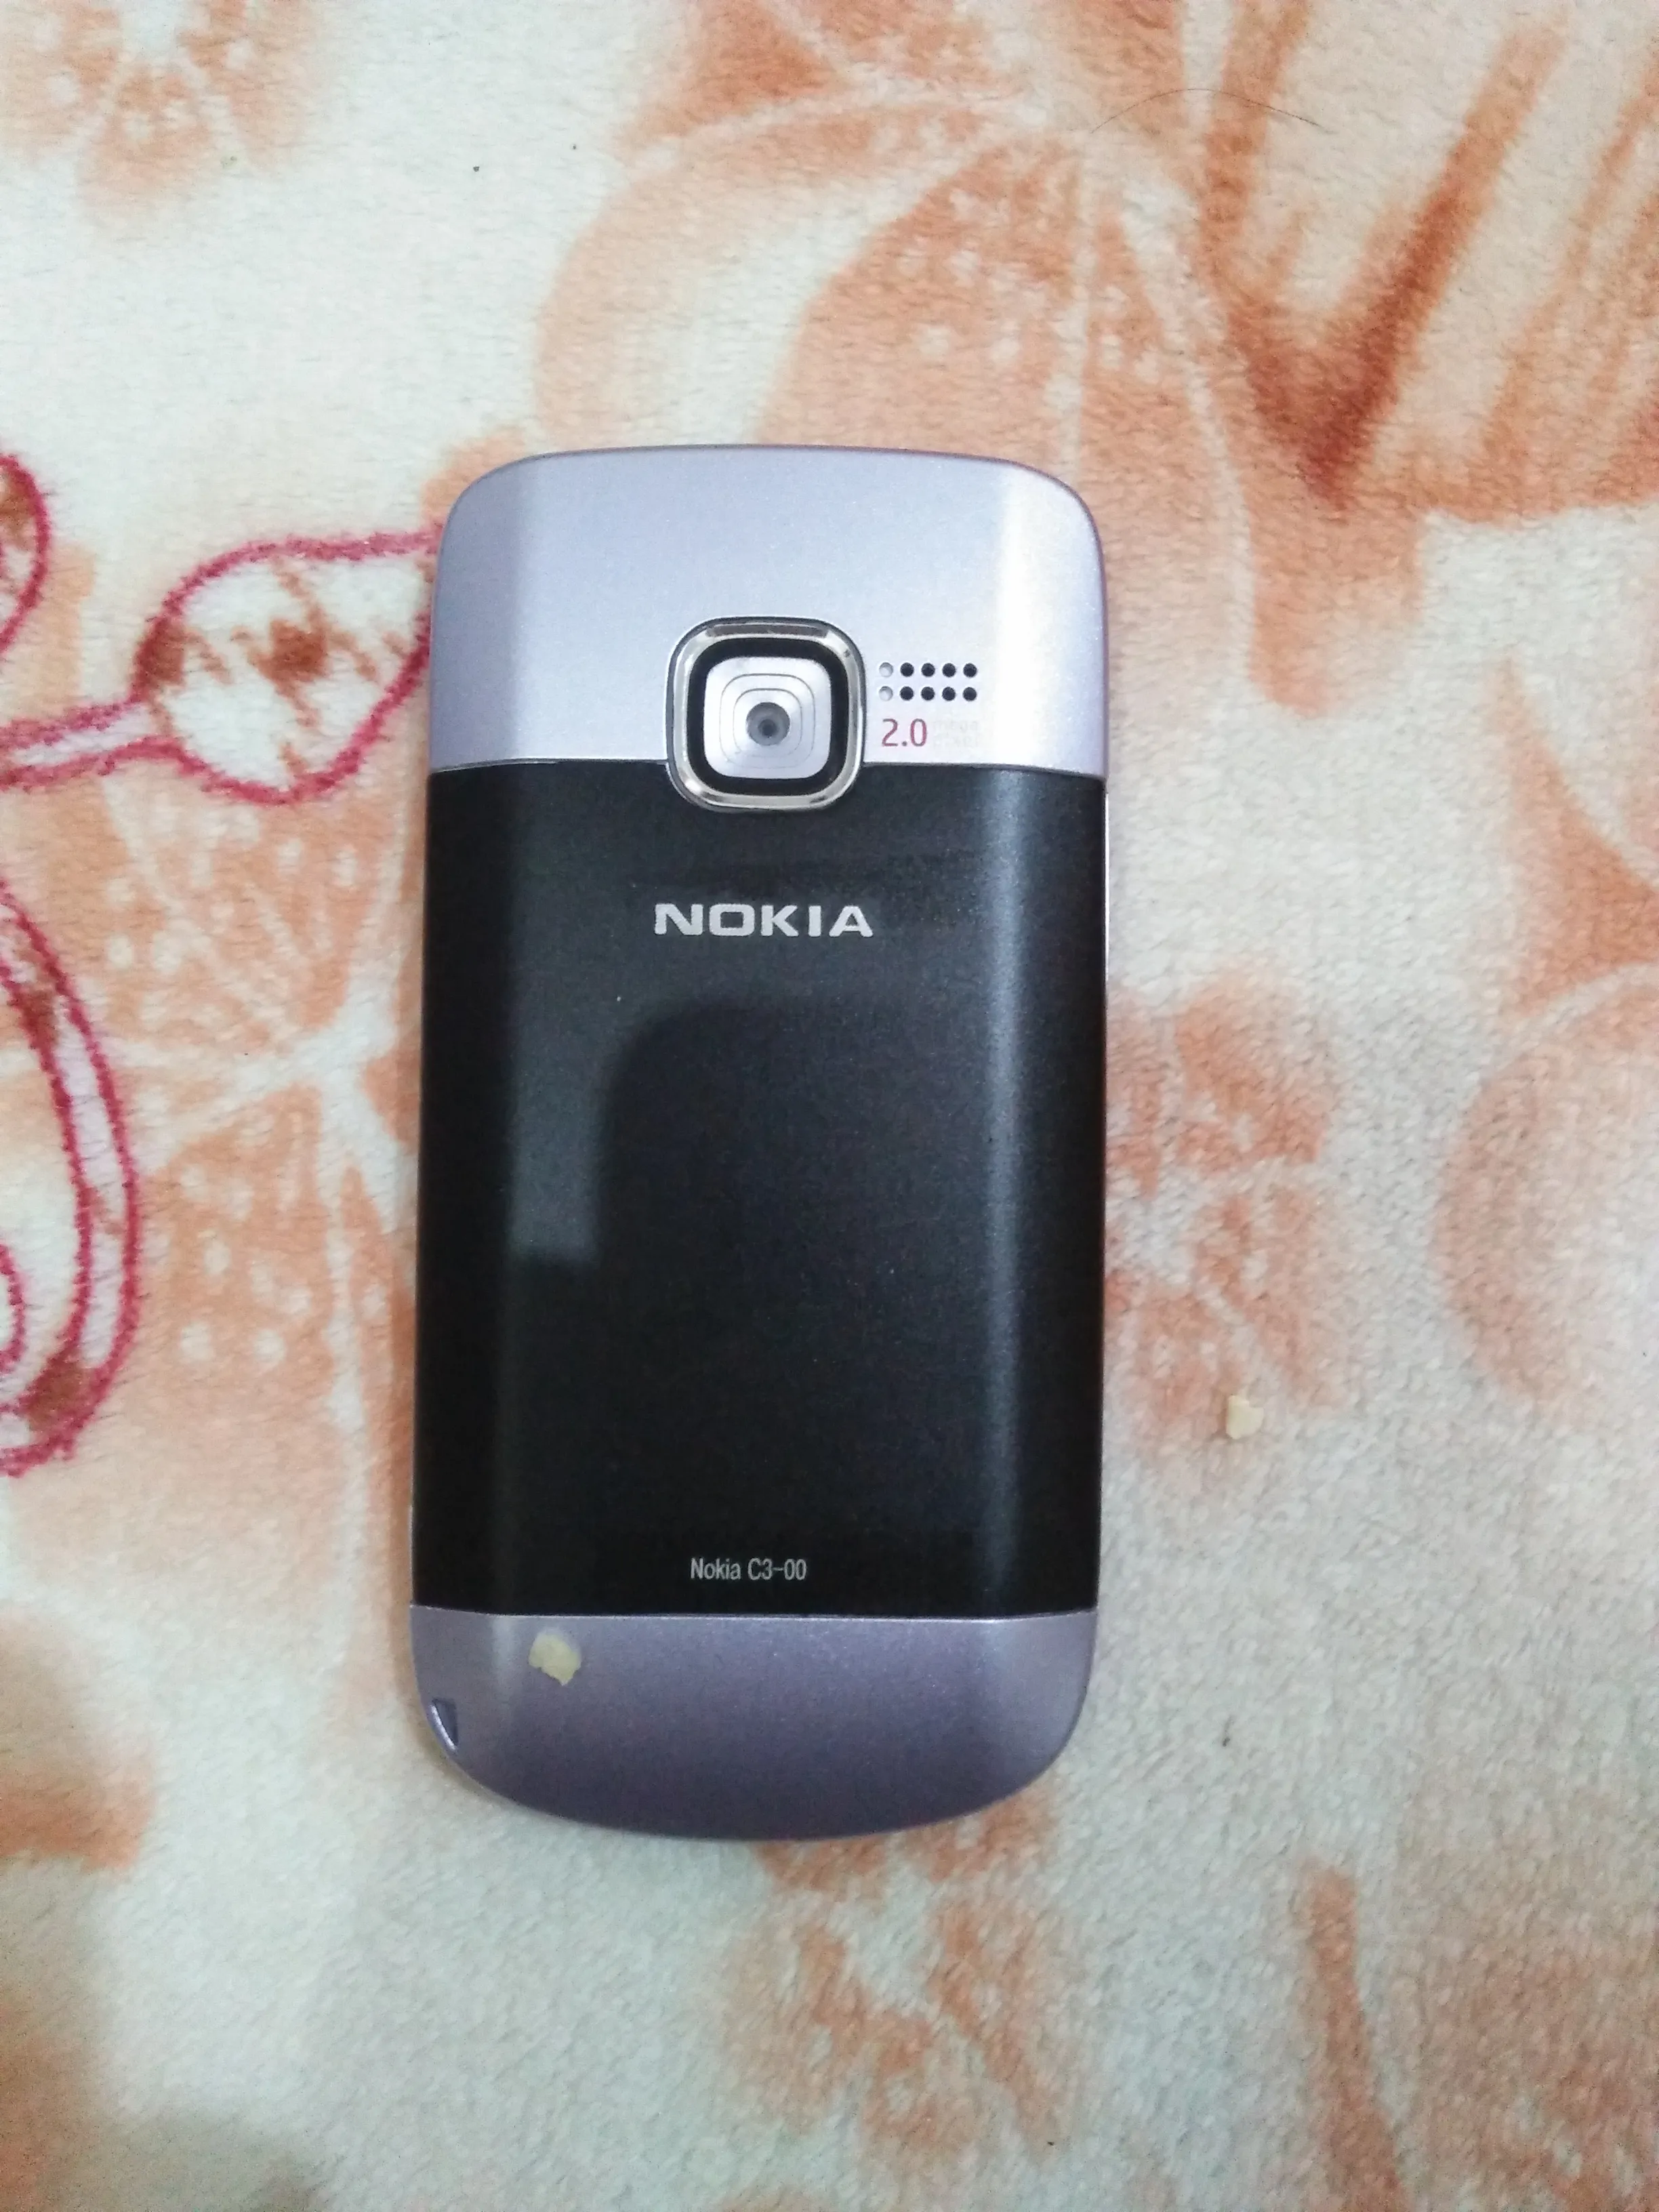 Nokia c3-00 wifi - photo 1